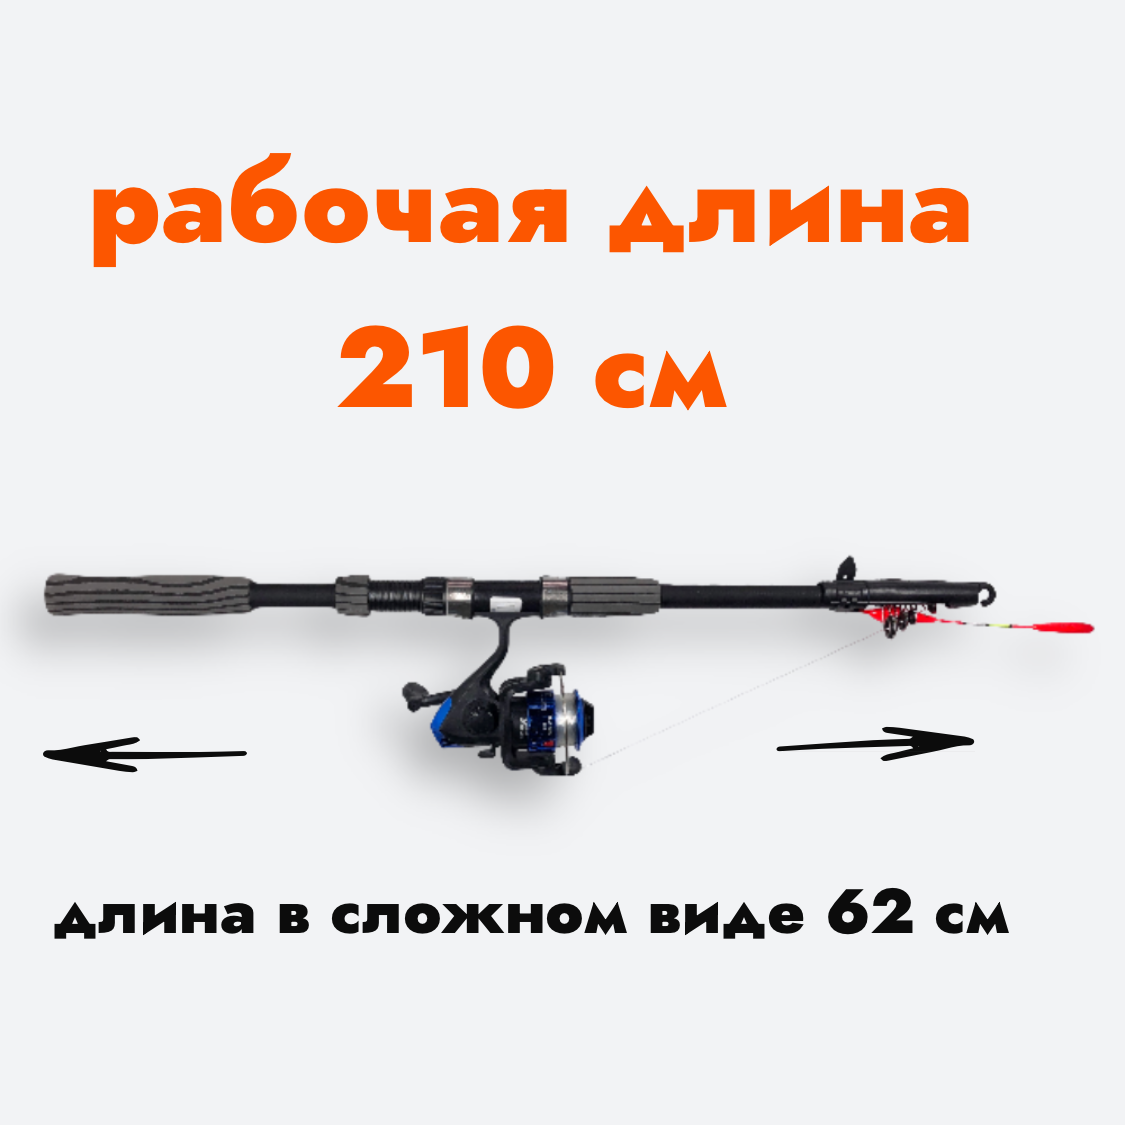 Удочка для рыбалки в сборе 210 с катушкой и леской телескопическая поплавочная складная готовый комплект для рыбалки 21 м